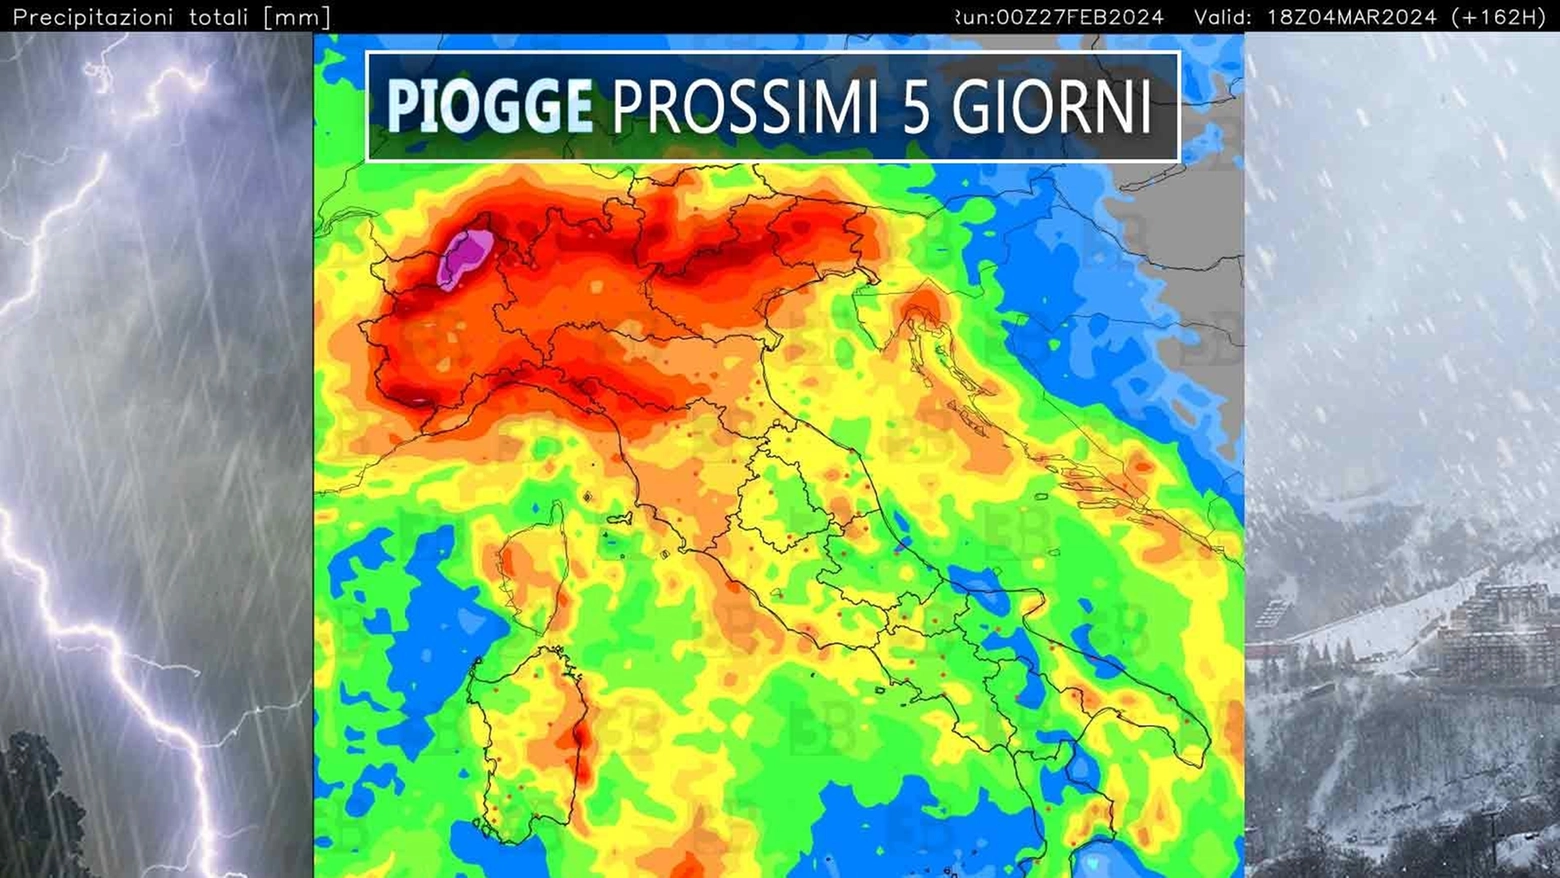 3bmeteo: “Duratura fase piovosa sull’Italia con via vai di perturbazioni. Sulle Alpi accumuli notevoli, anche oltre 2-3 metri sopra quota 2000”